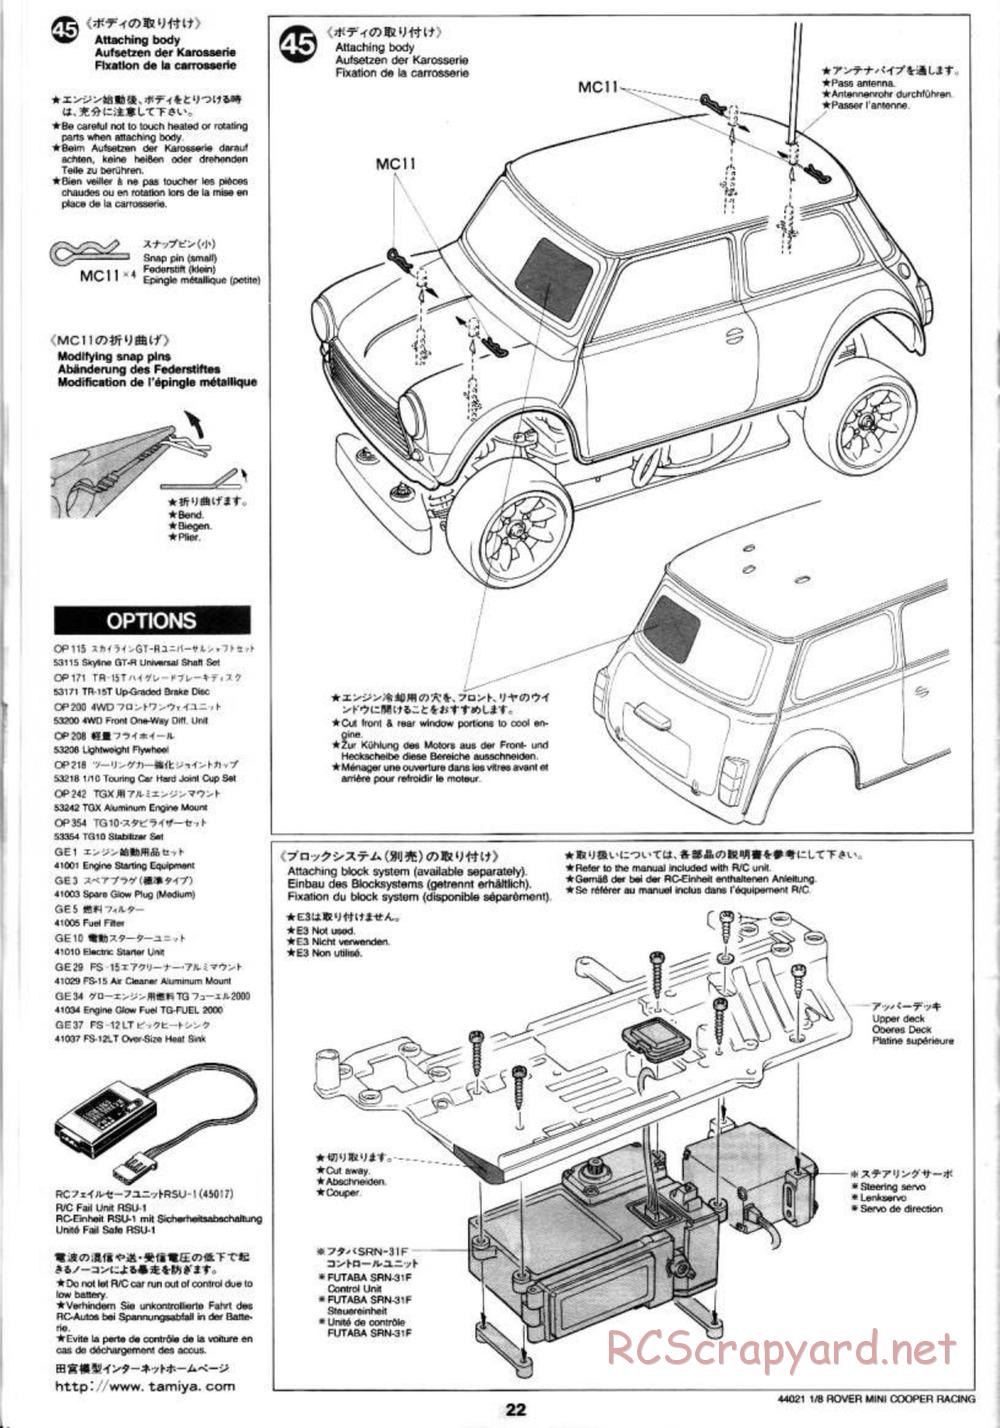 Tamiya - Rover Mini Cooper Racing - TG10 Mk.1 Chassis - Manual - Page 22